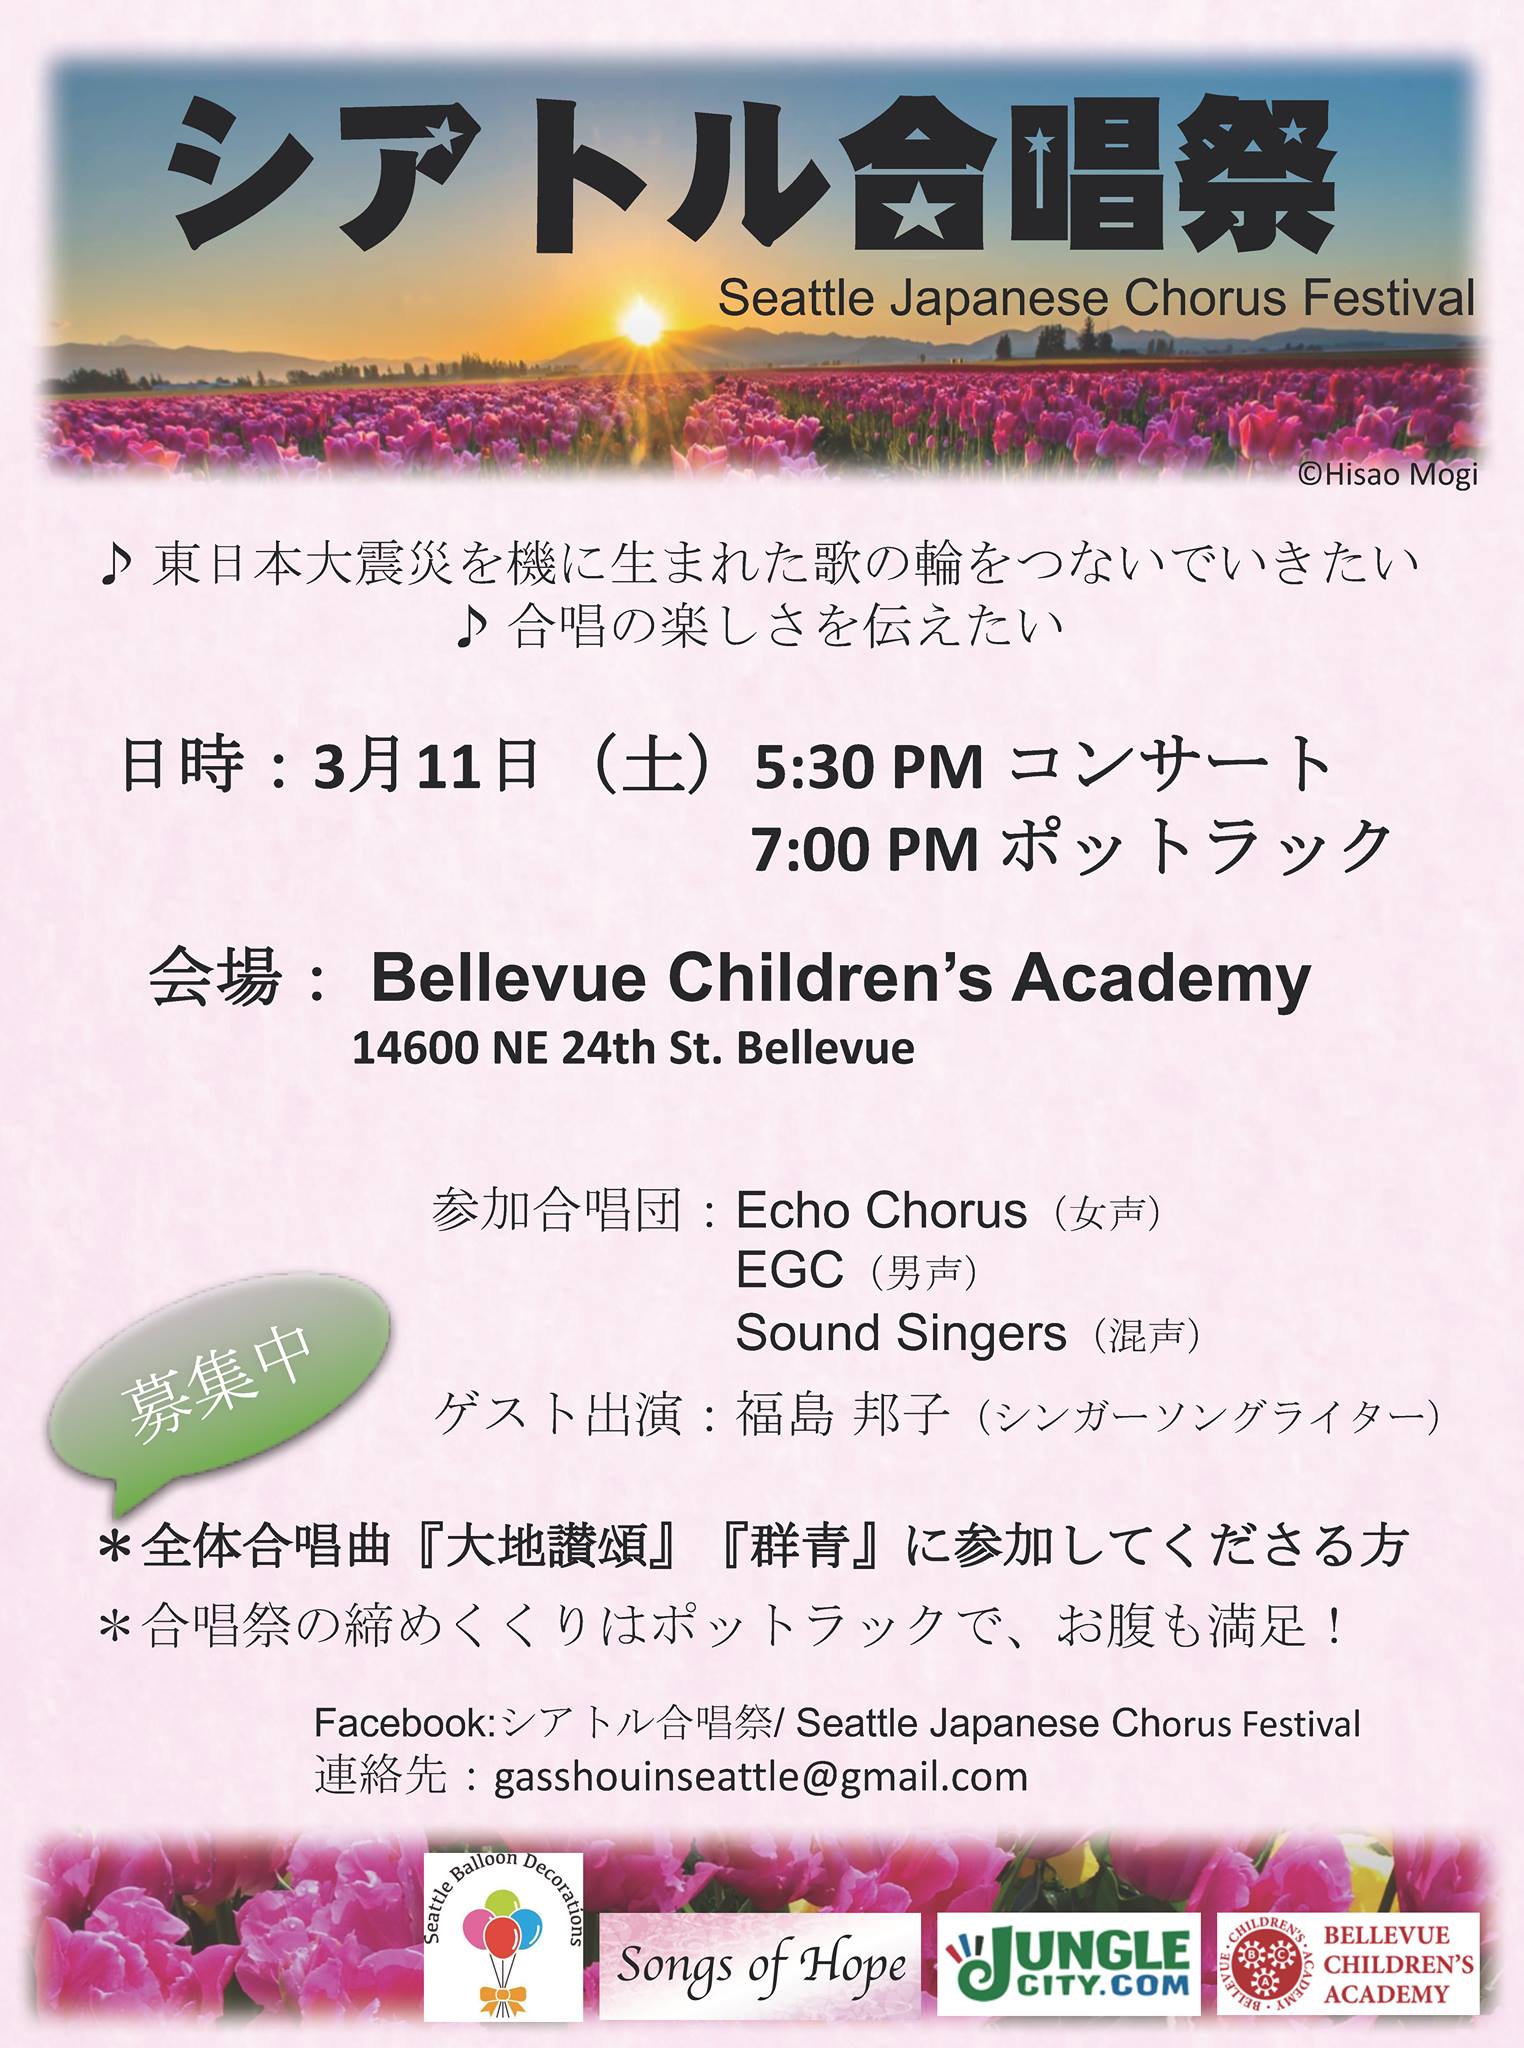 Japanese Poster for Seattle Japanese Chorus Festival